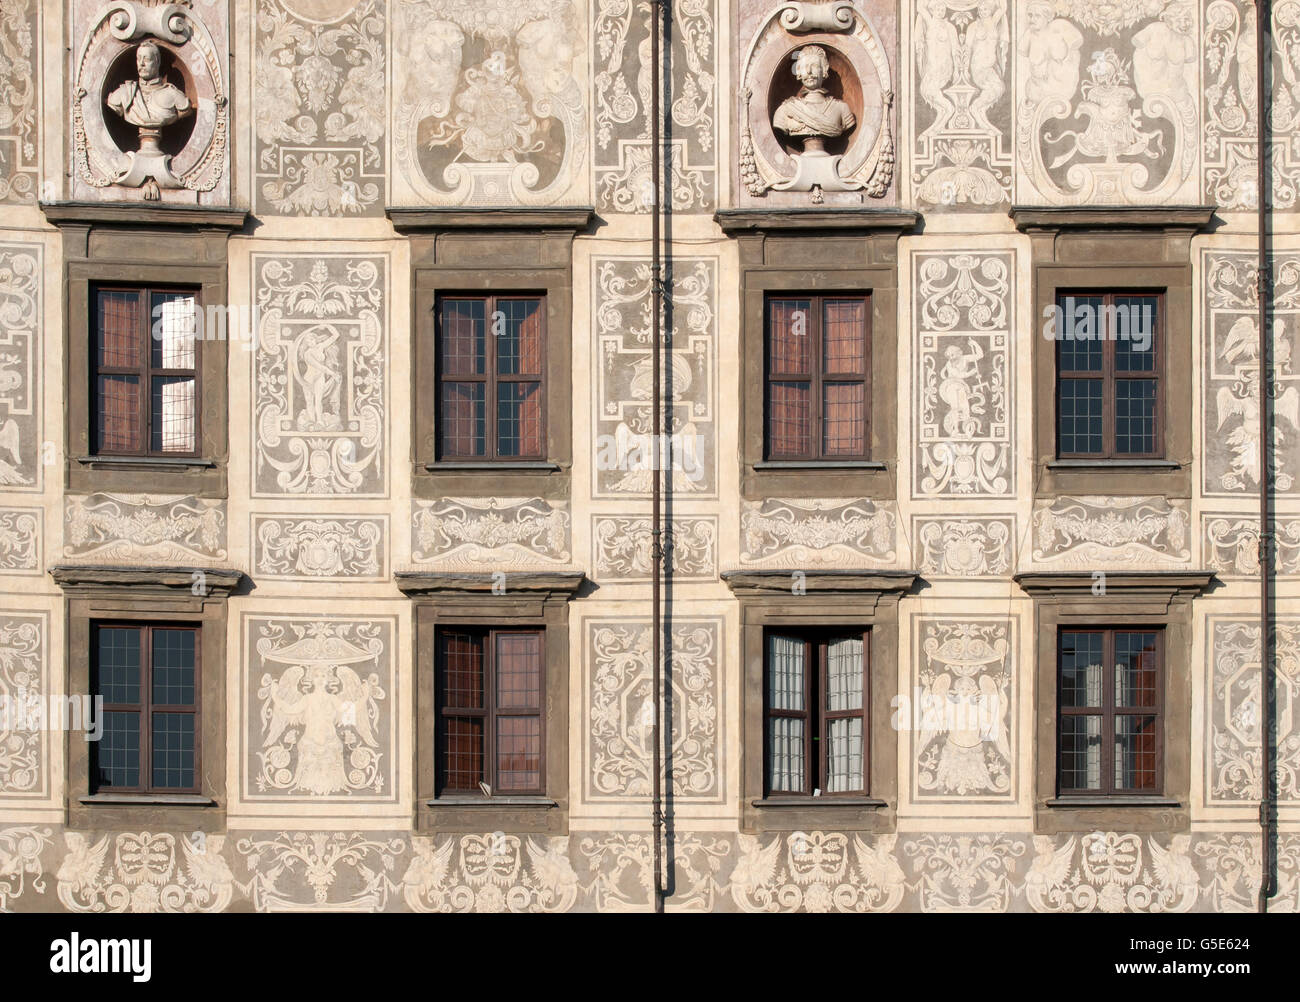 Sgraffiti facade of Palazzo della Carovana, Palazzo dei Cavalieri, palace housing Scuola Normale Superiore, in Knights' Square Stock Photo